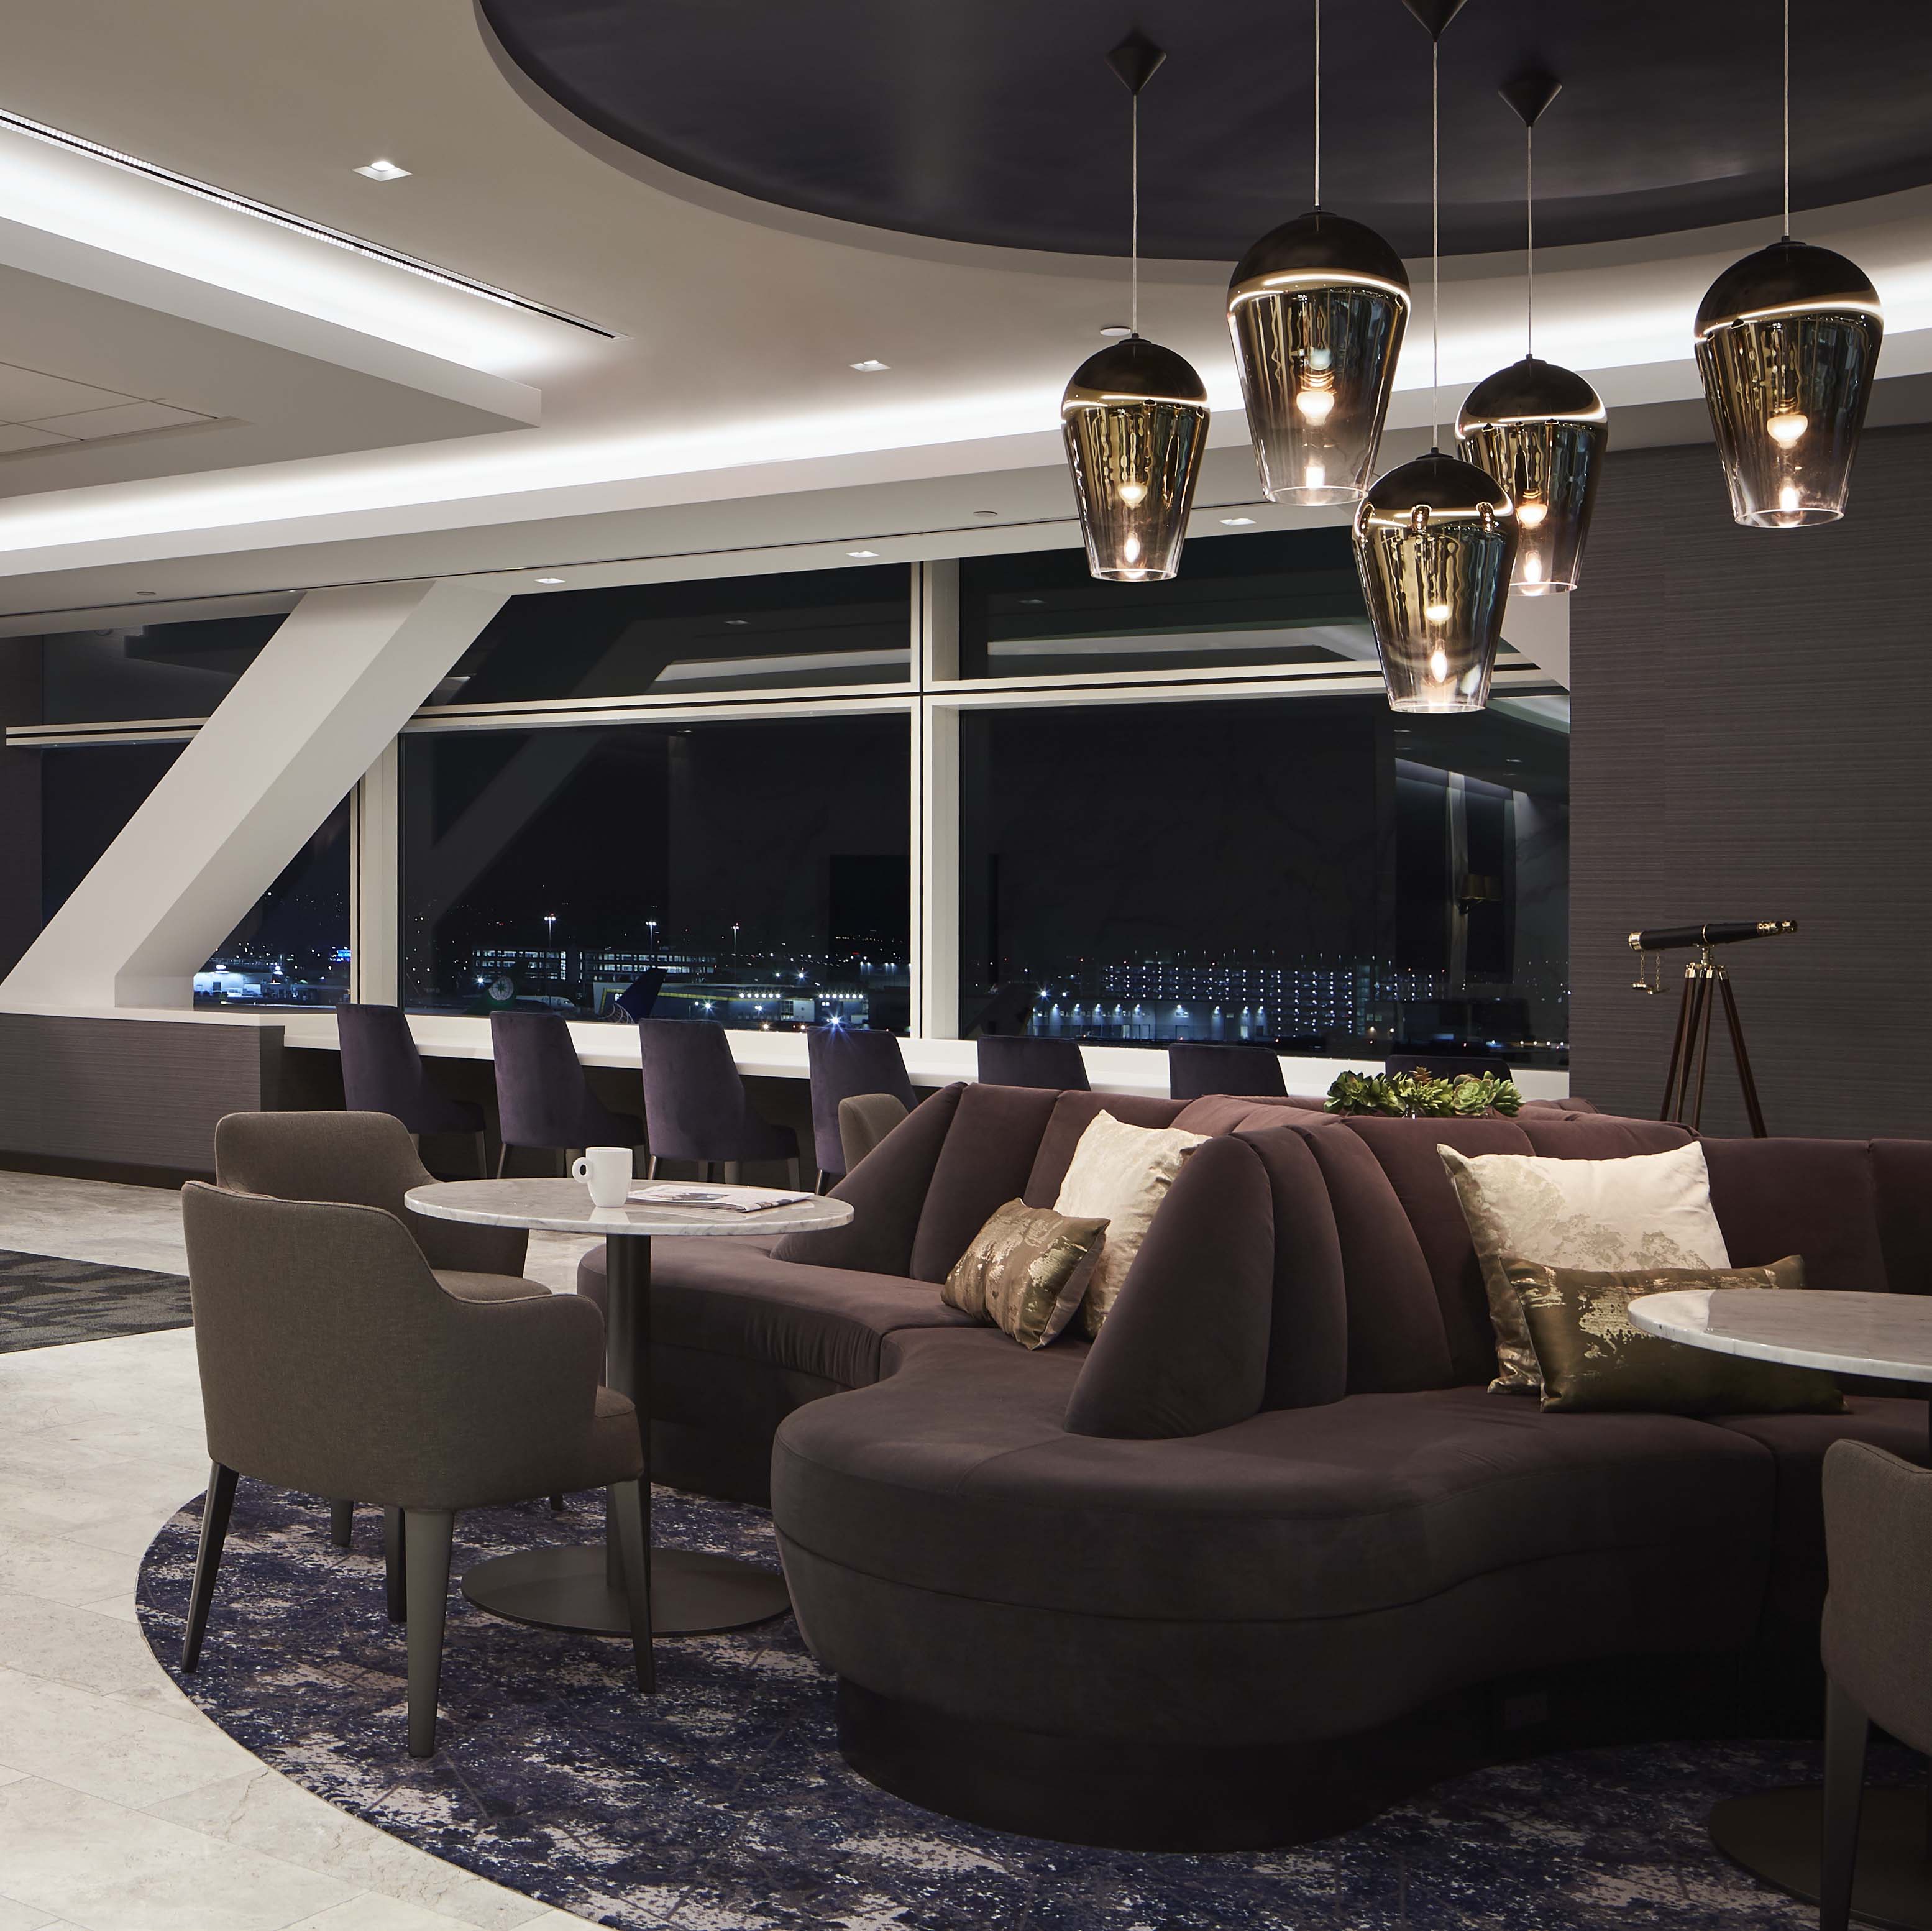 Lounge at SCB's United Polaris SFO. Architecture. Aviation. Interior Design.